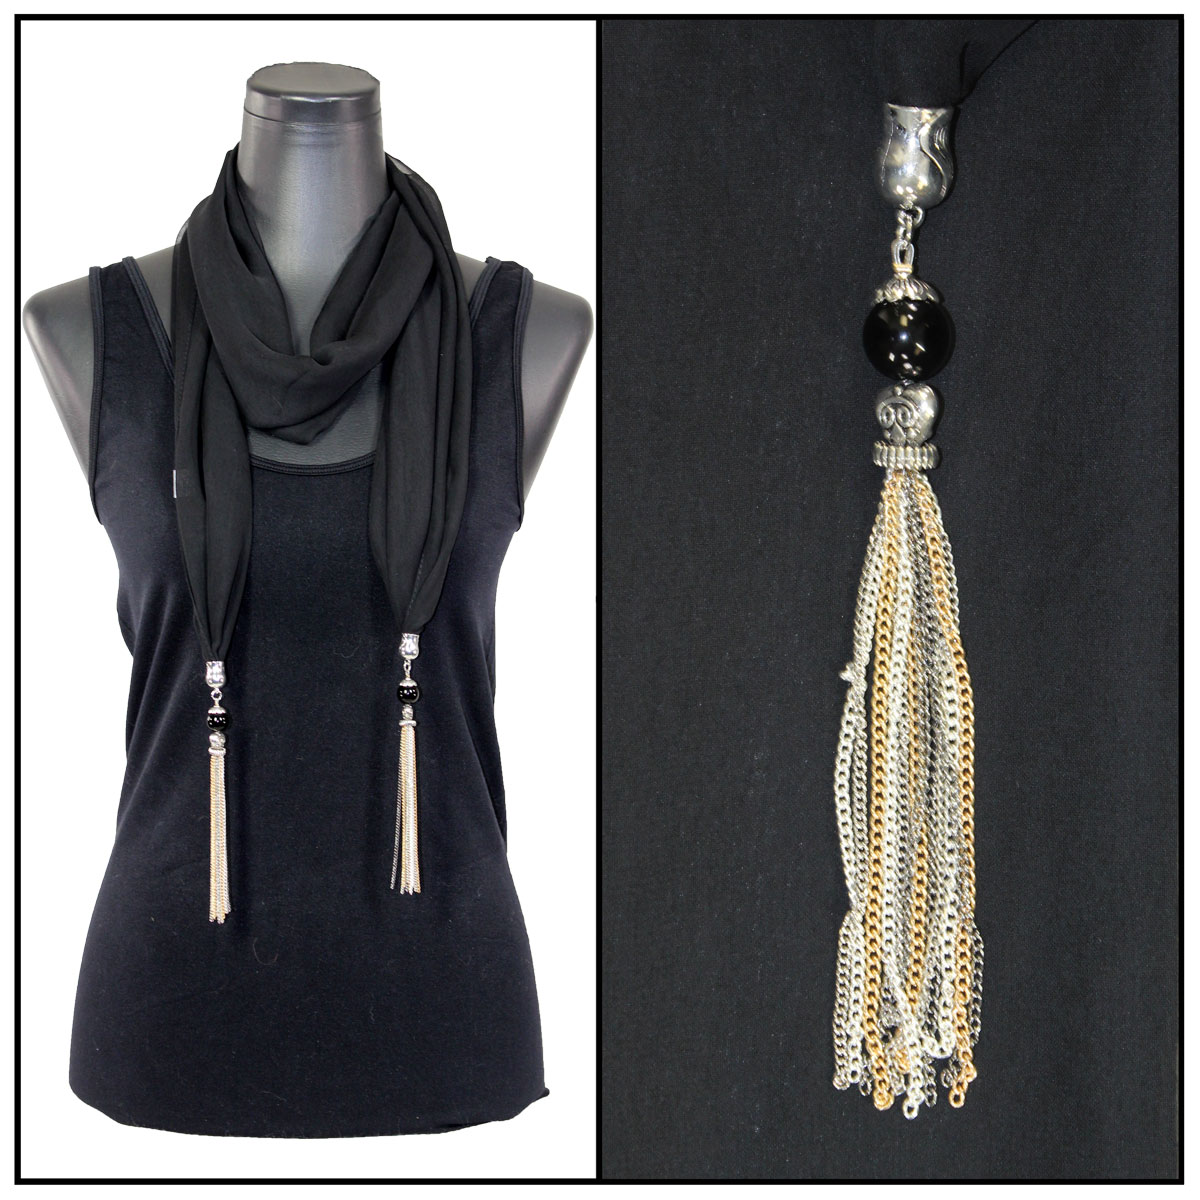 9001 - Tasseled Silky Dress Scarves Solid Teal<br>
Metal Tassels - 